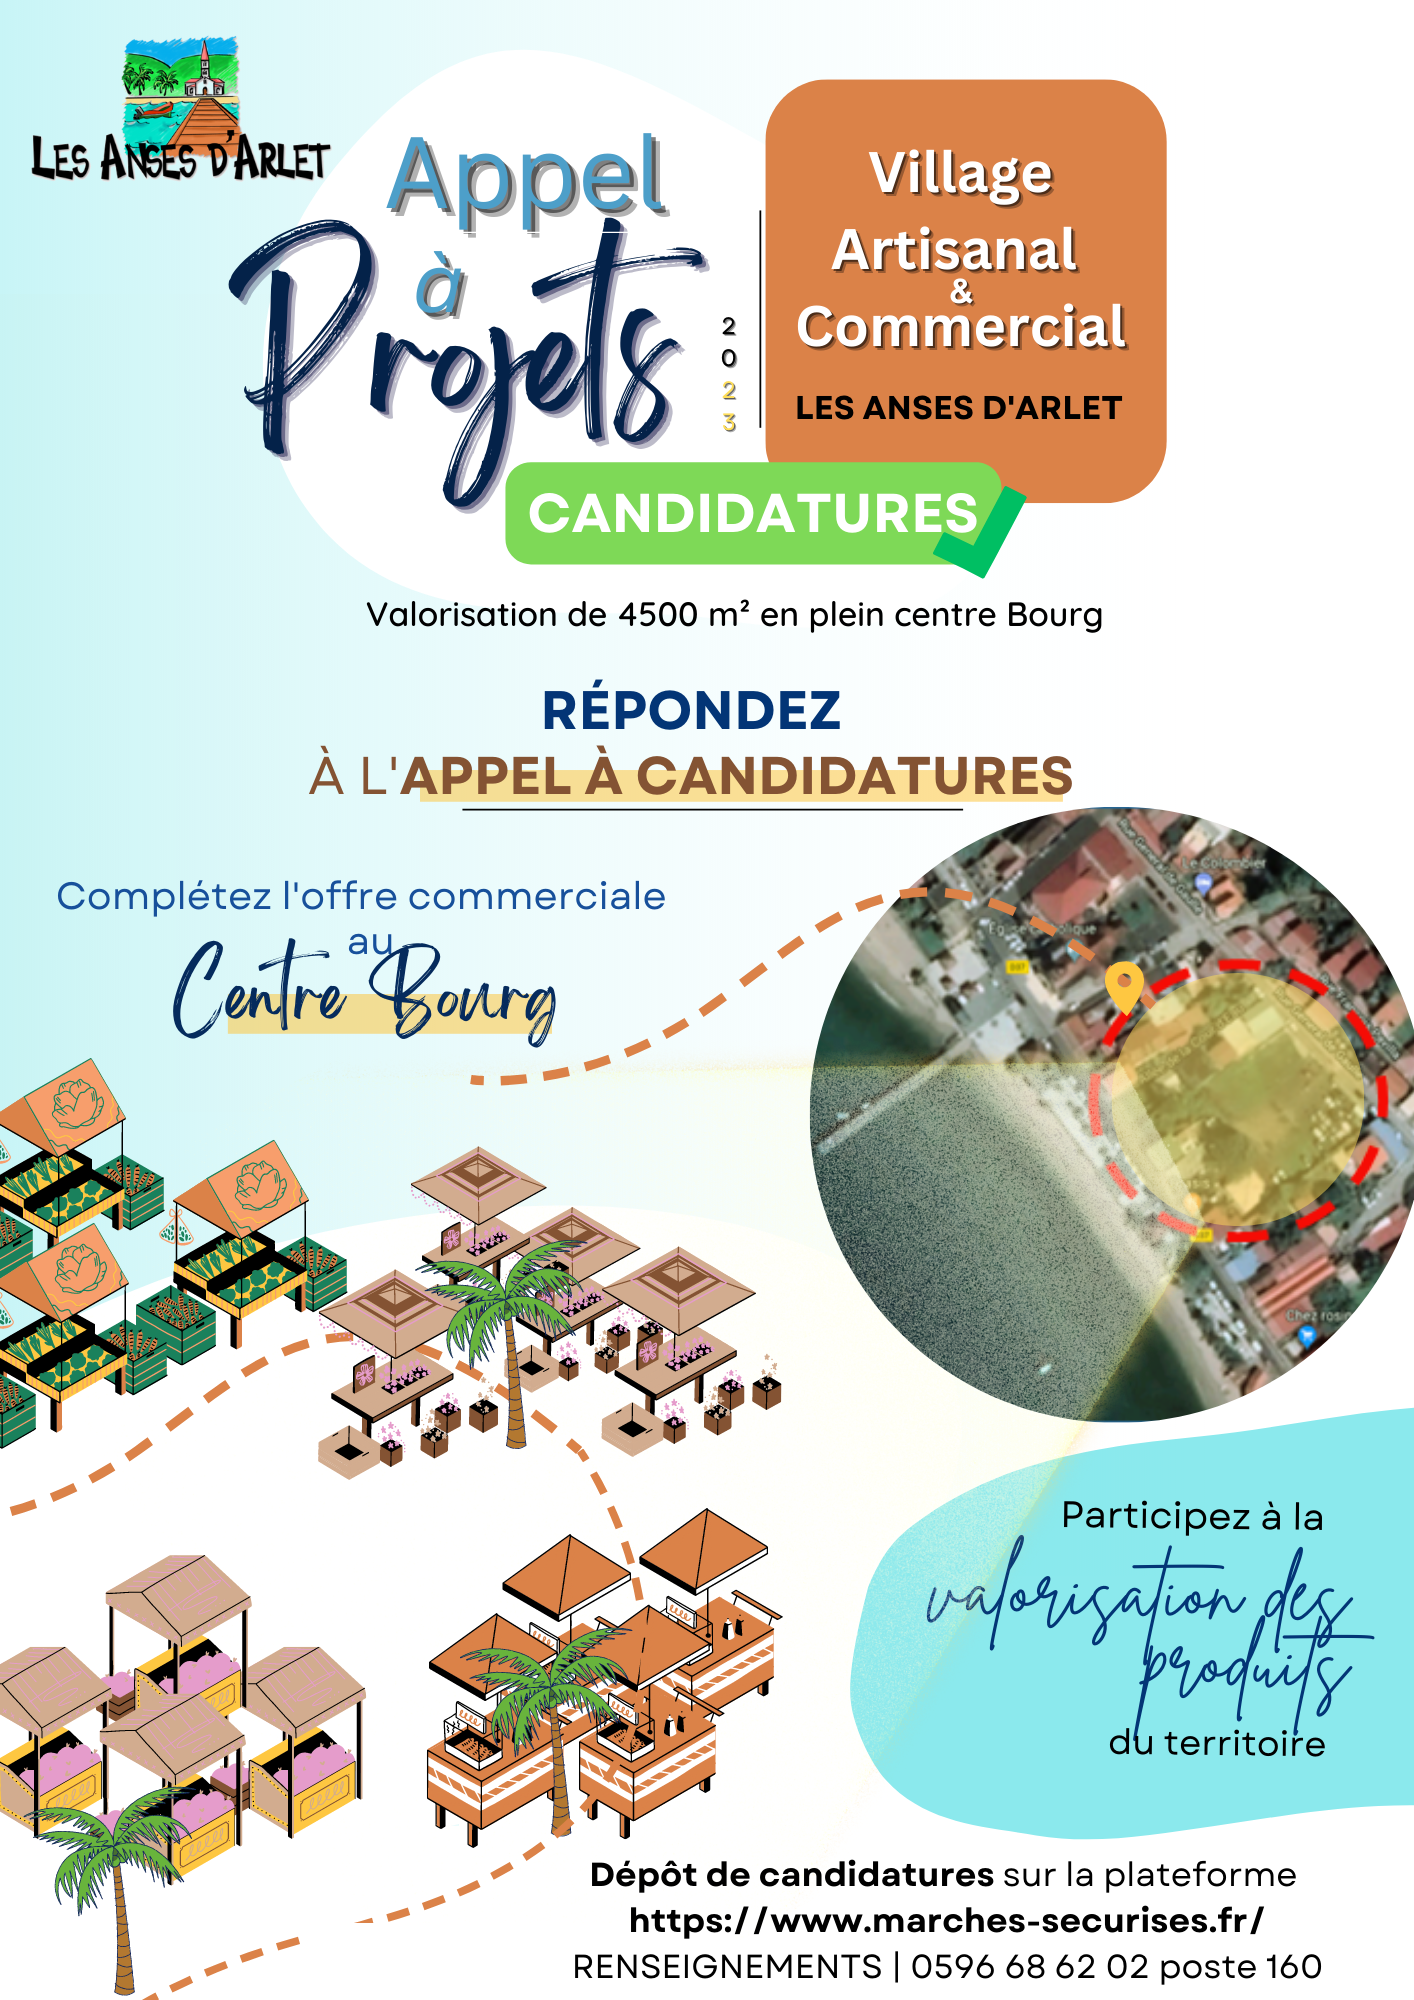 Image de couverture - APPEL A PROJETS - Candidatures | Village Artisanal & Commercial | LES ANSES D'ARLET